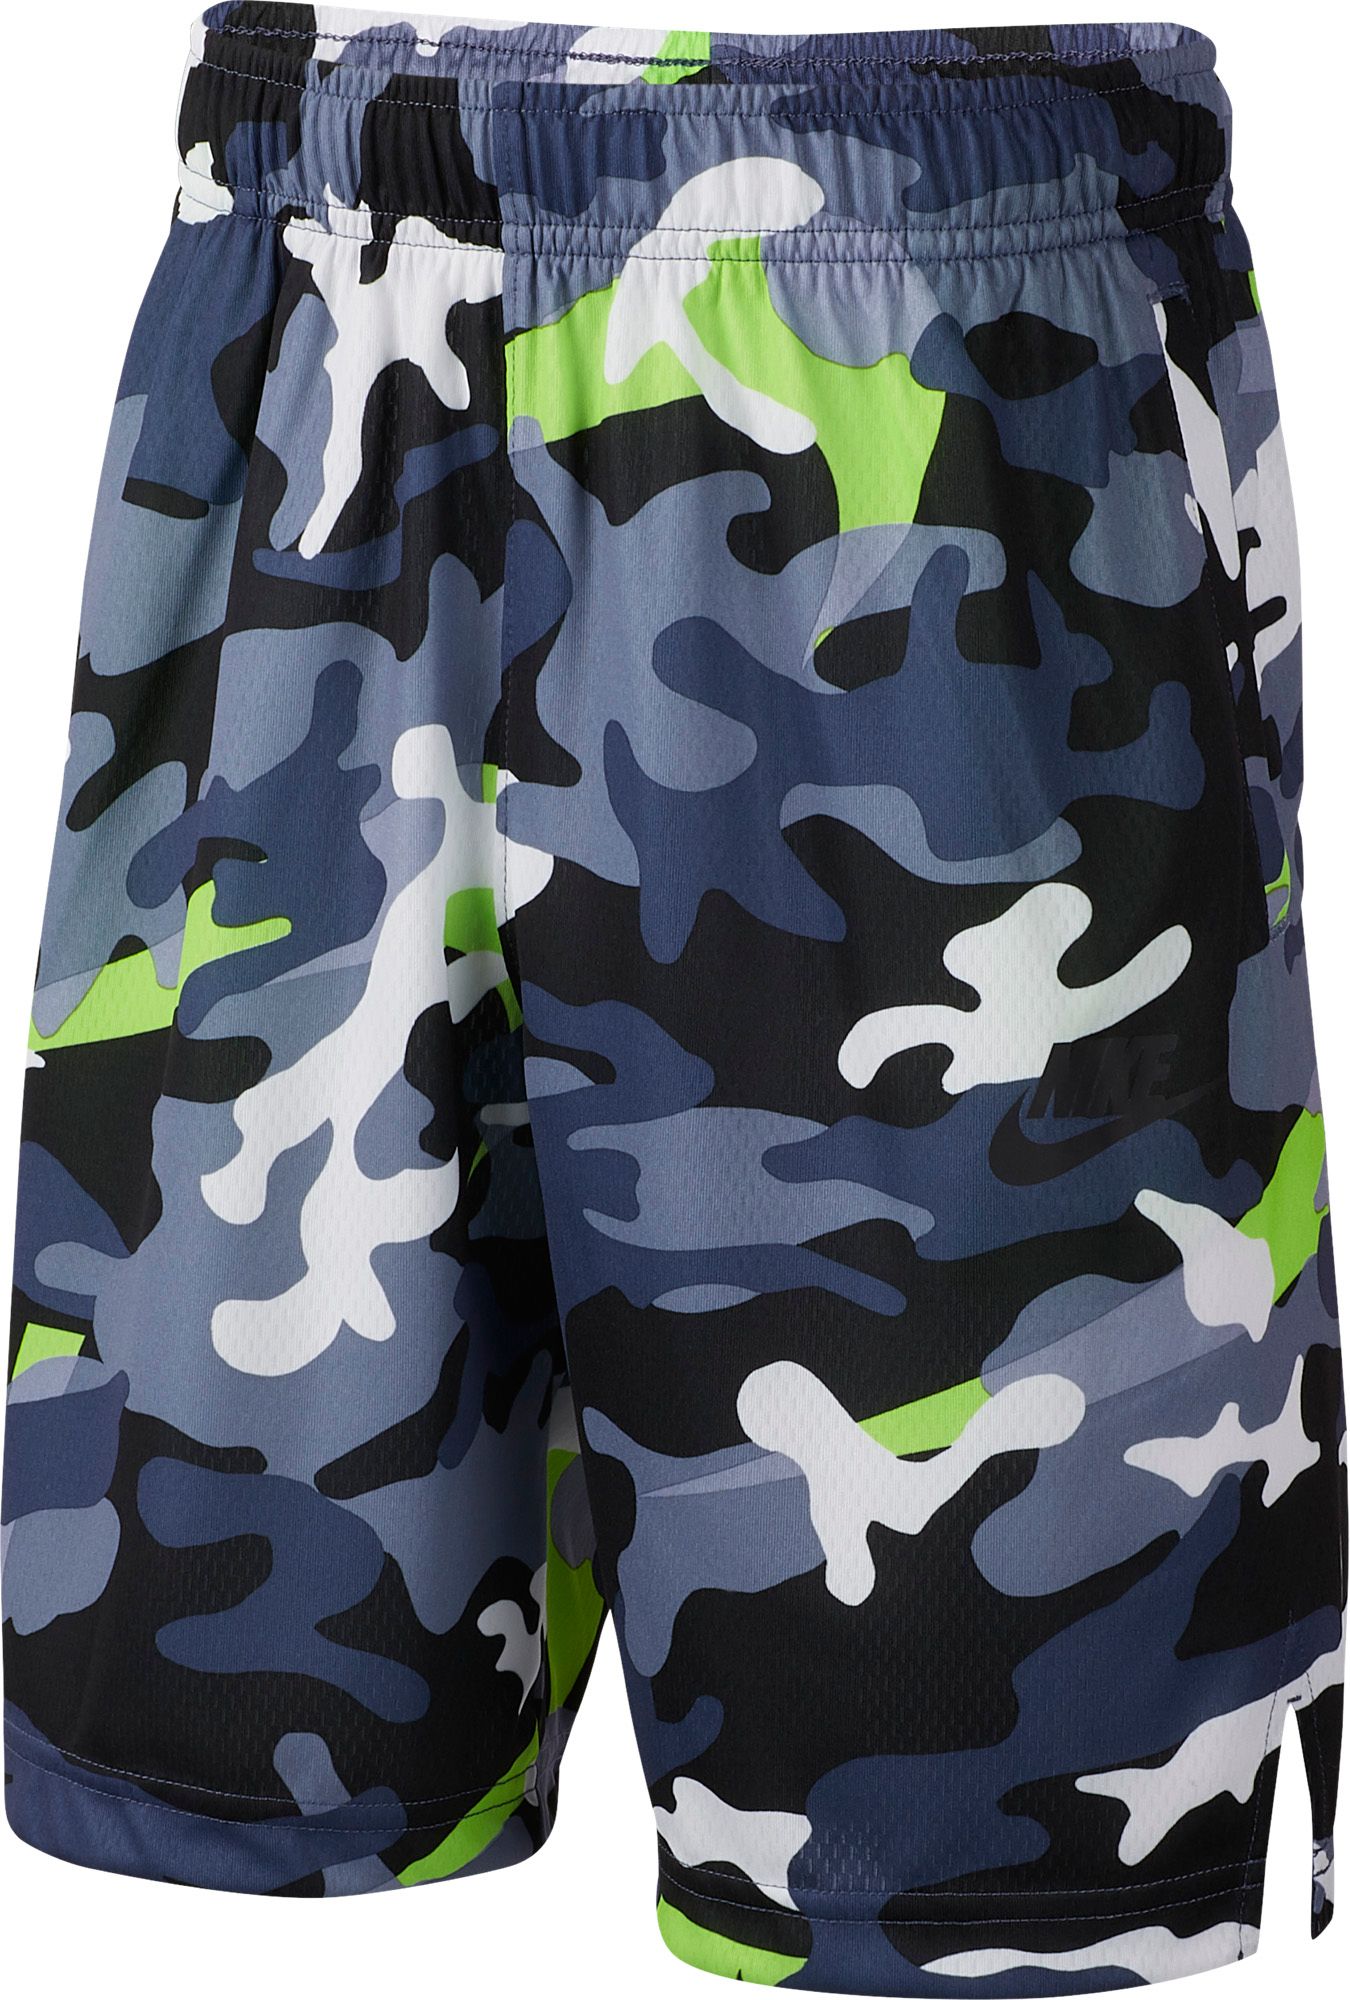 nike camouflage shorts